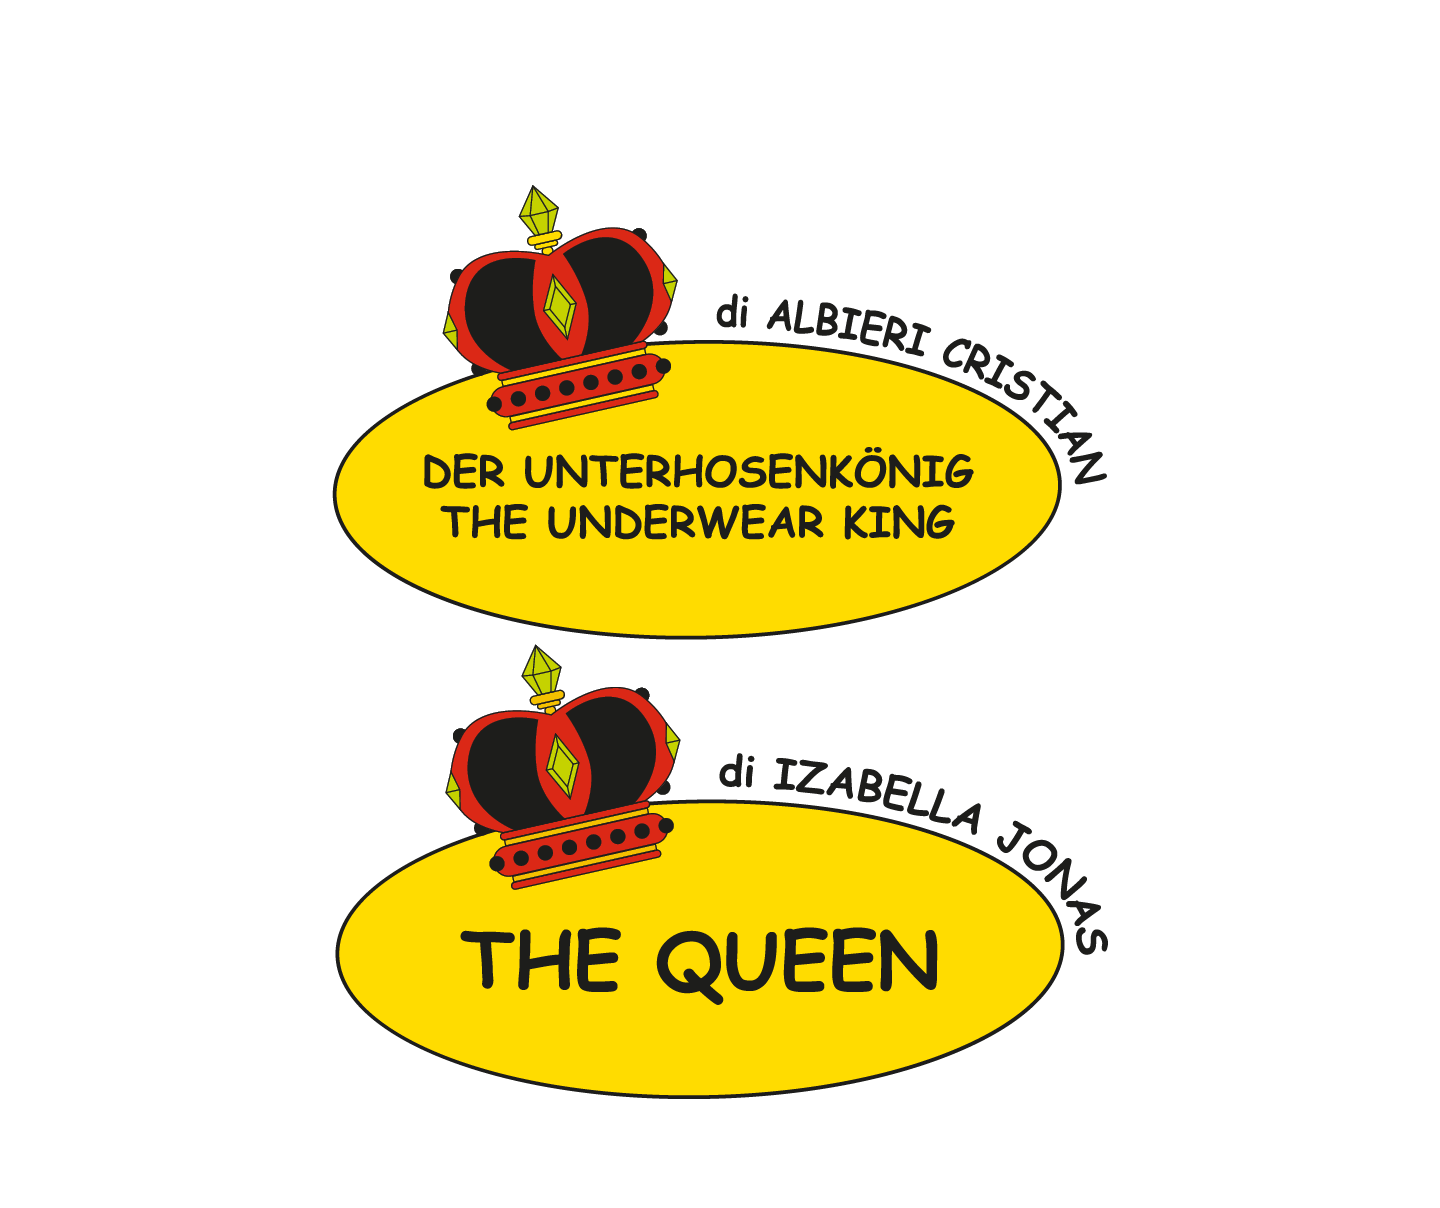 Der Unterhosenkonig - The underwear King